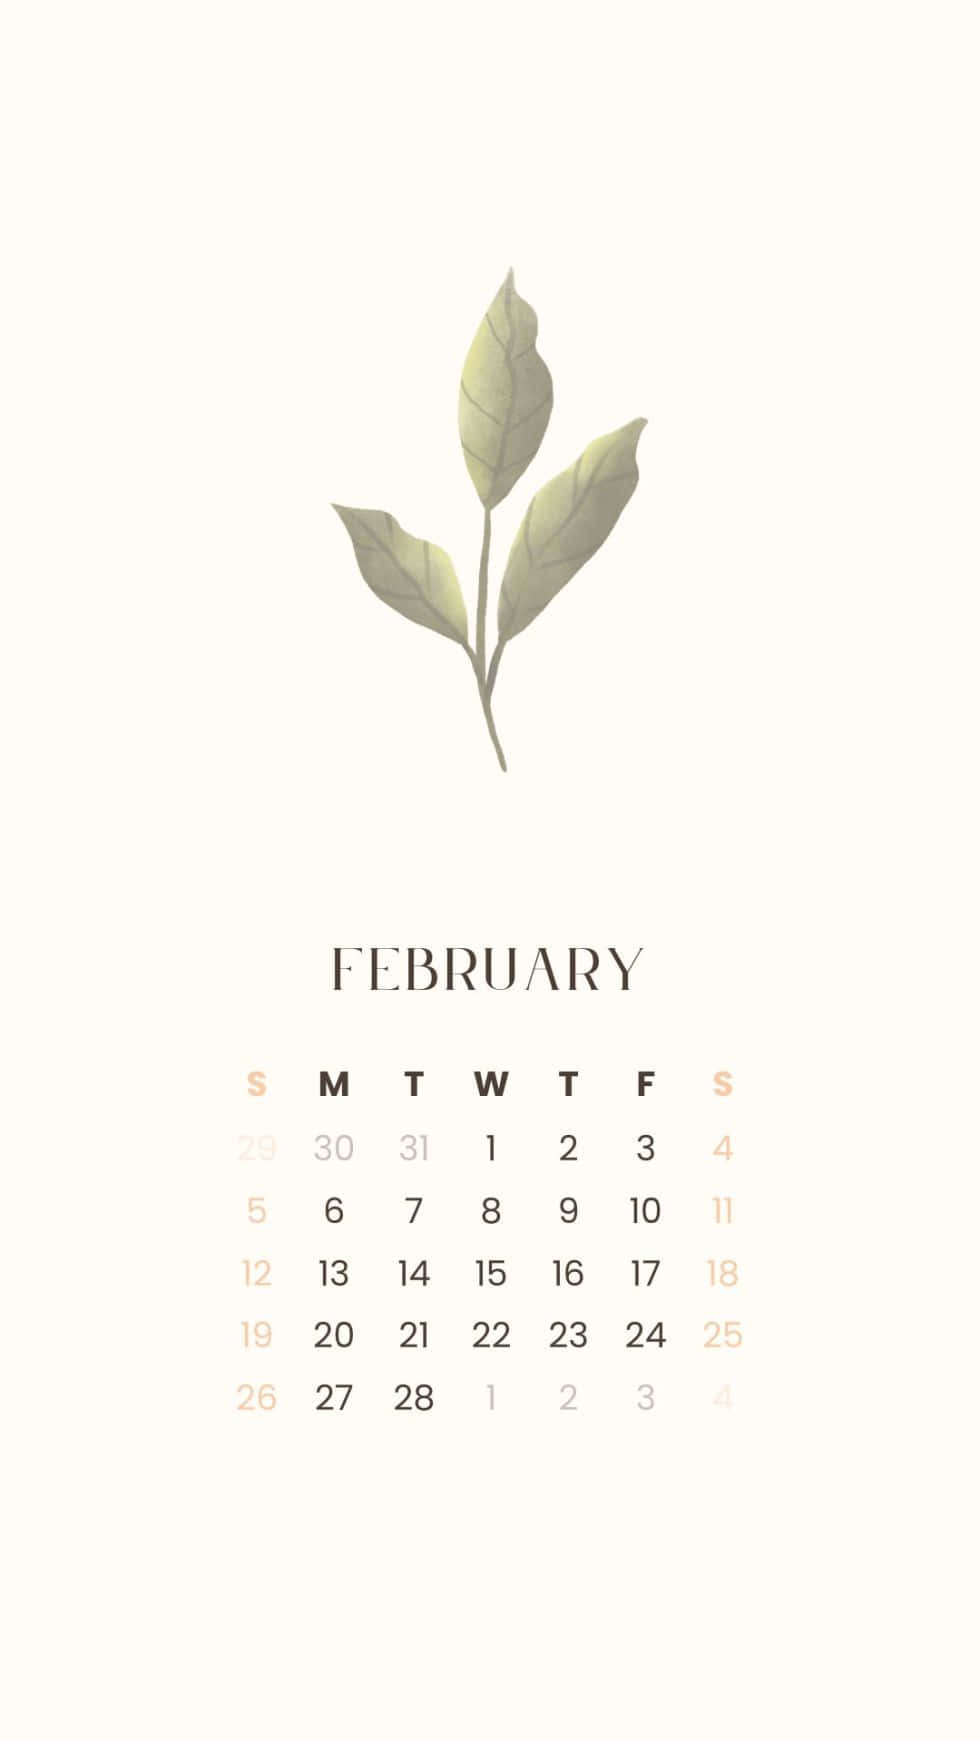 Februari2019 Kalender Med Ett Löv På Den.